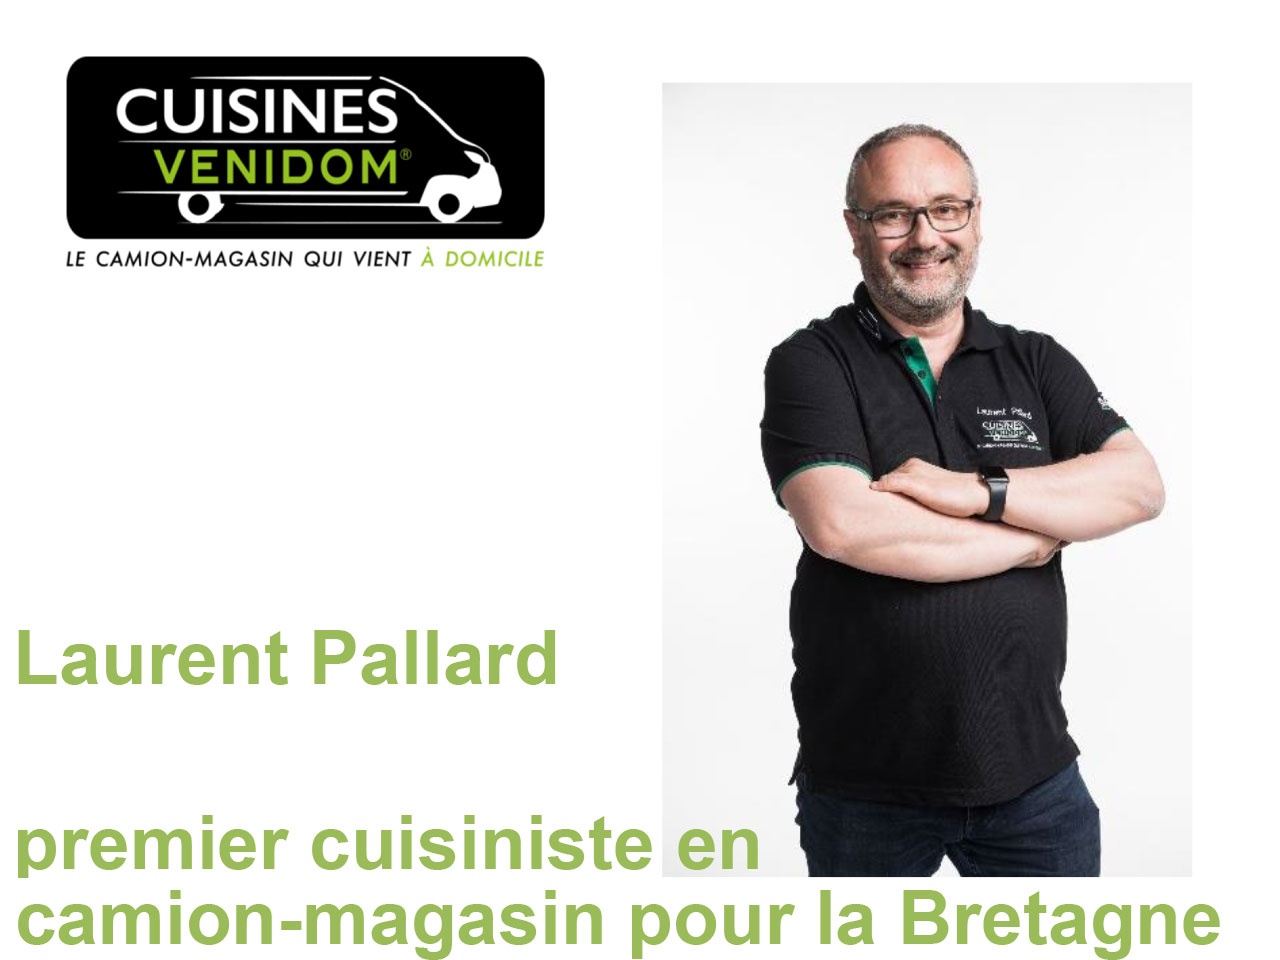 CUISINES VENIDOM : Laurent Pallard devient le premier cuisiniste en camion-magasin pour la Bretagne